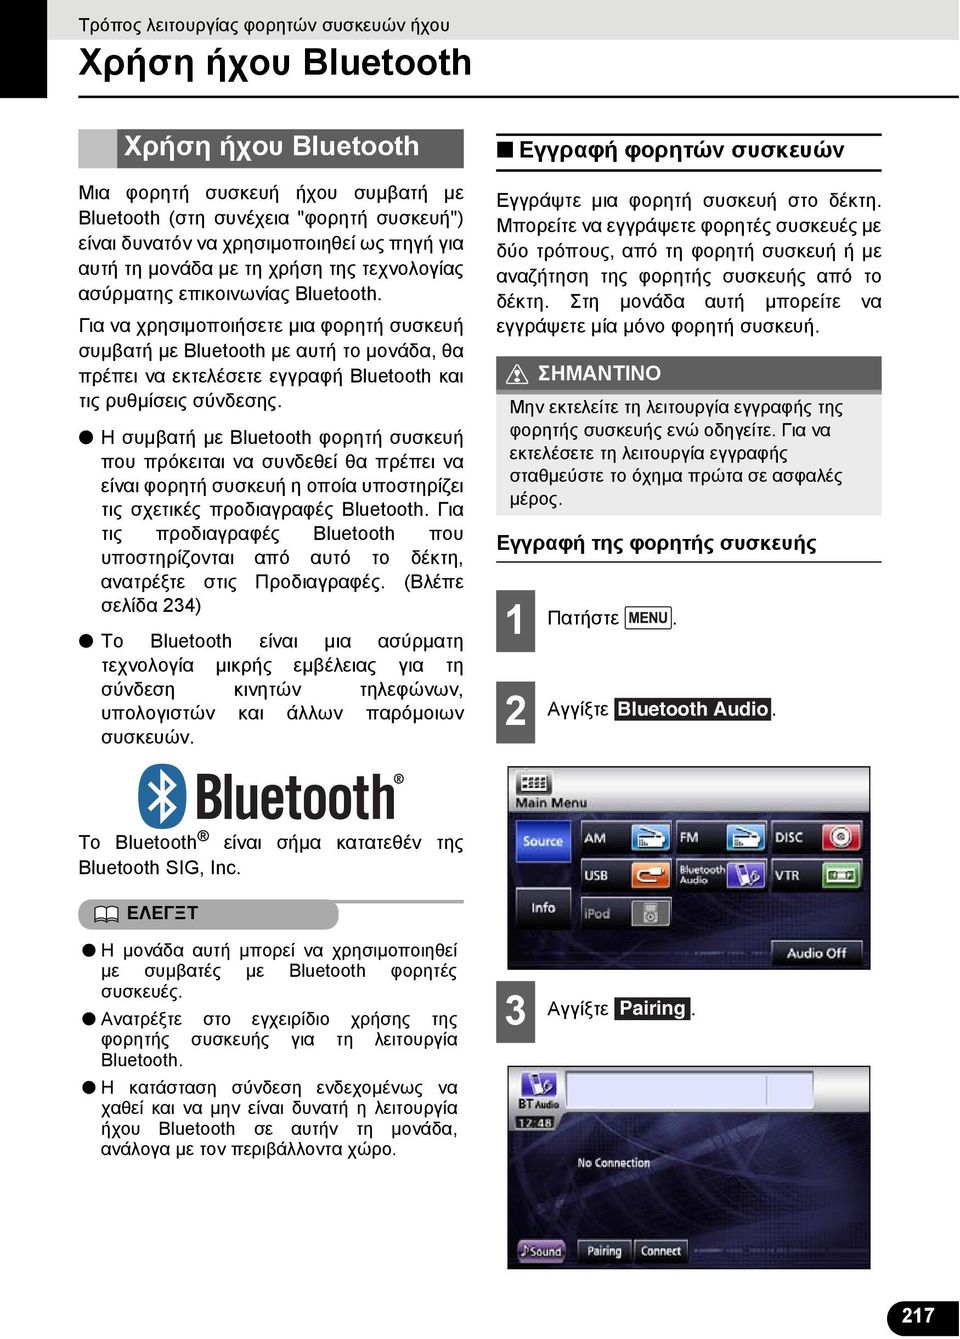 Η συμβατή με Bluetooth φορητή συσκευή που πρόκειται να συνδεθεί θα πρέπει να είναι φορητή συσκευή η οποία υποστηρίζει τις σχετικές προδιαγραφές Bluetooth.